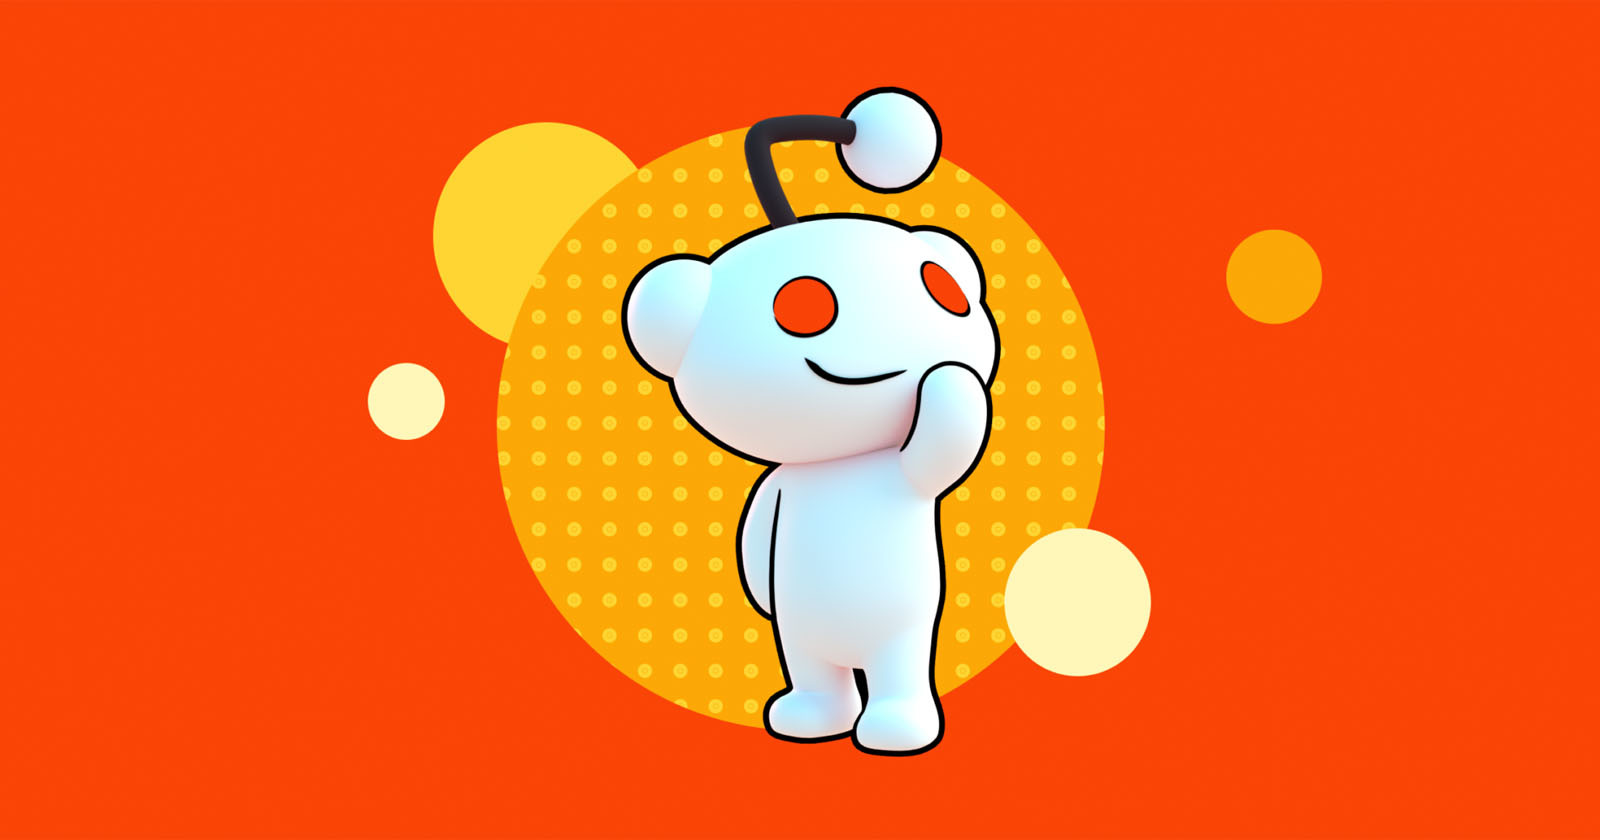 Reddit is Adding TikTok-Like Video Feed